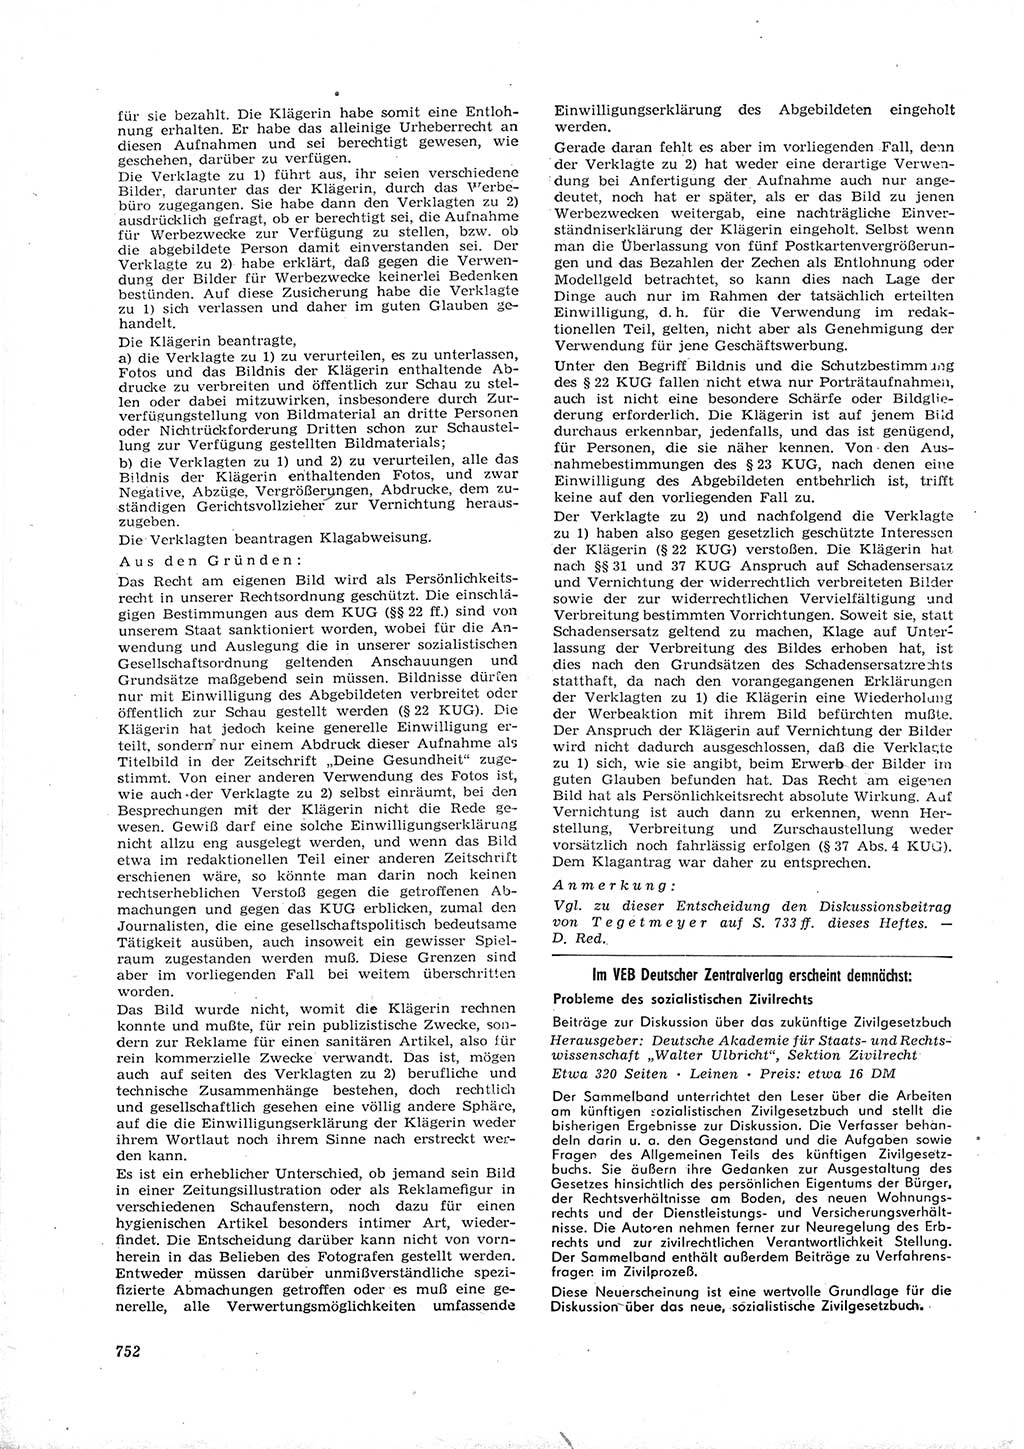 Neue Justiz (NJ), Zeitschrift für Recht und Rechtswissenschaft [Deutsche Demokratische Republik (DDR)], 16. Jahrgang 1962, Seite 752 (NJ DDR 1962, S. 752)